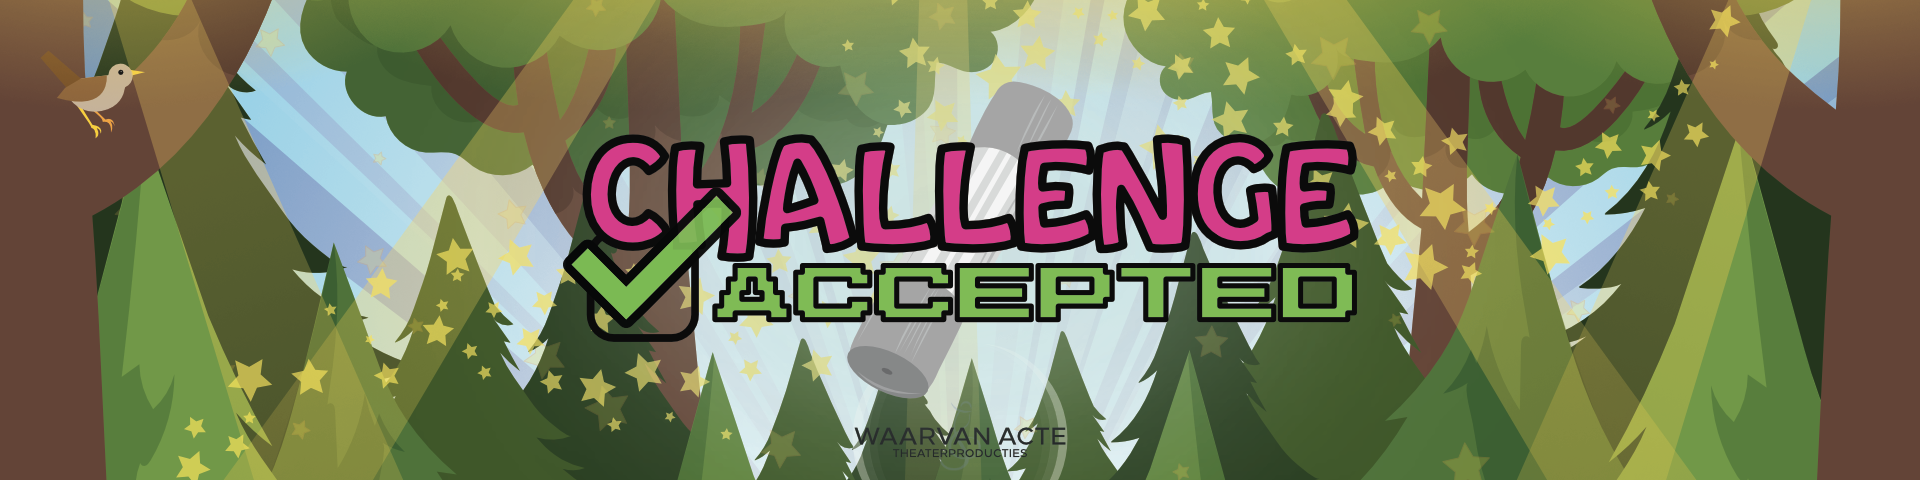 Challenge Accepted  Waarvan Acte Theaterproducties